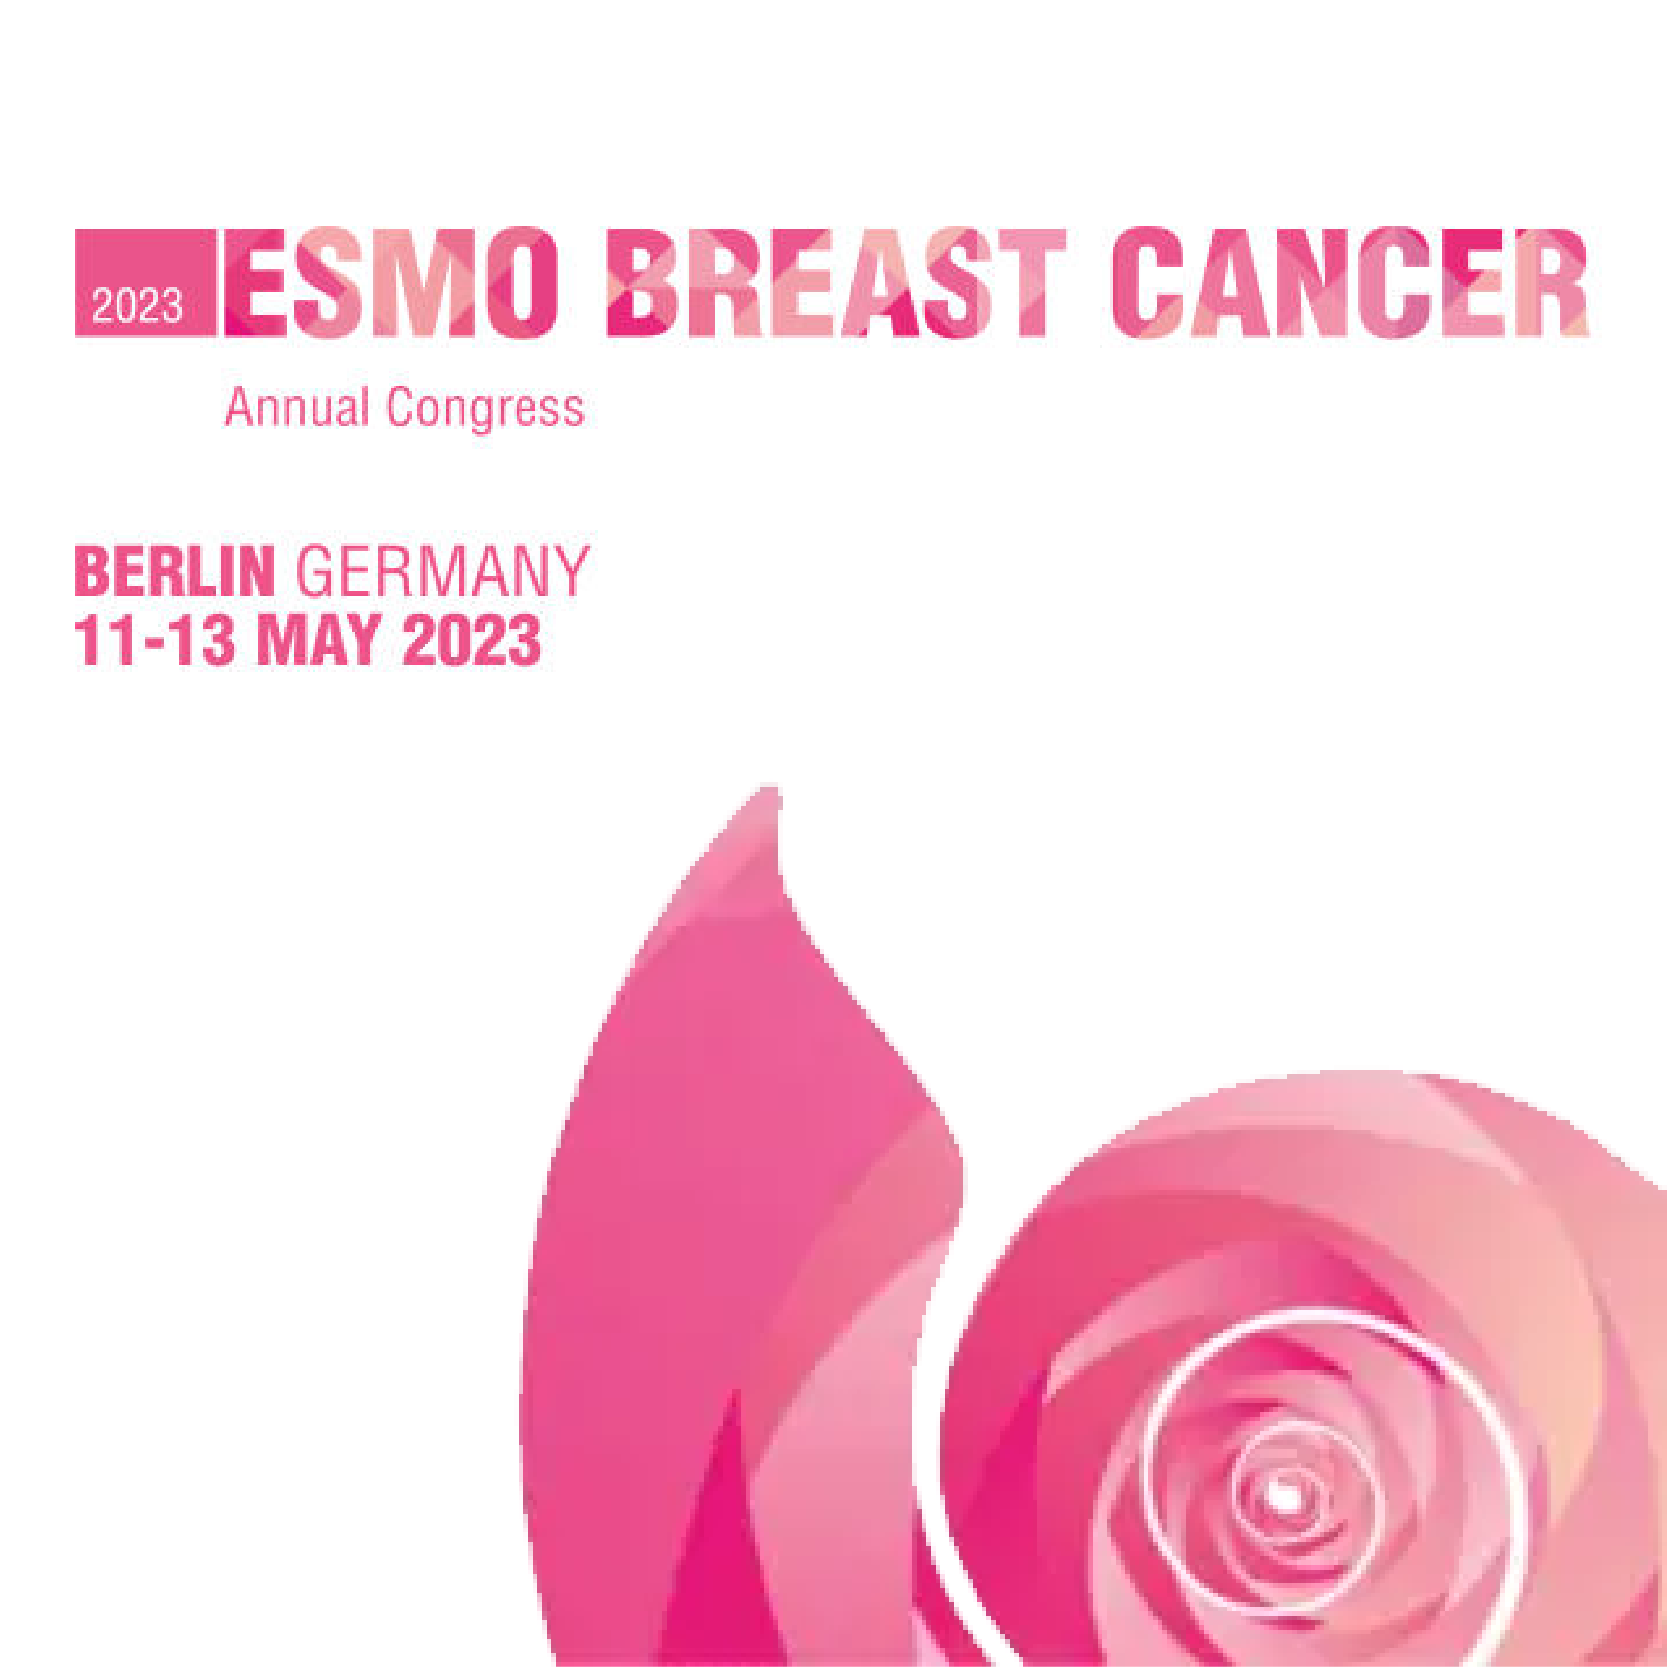 ESMO Breast Cancer Annual Congress 2023